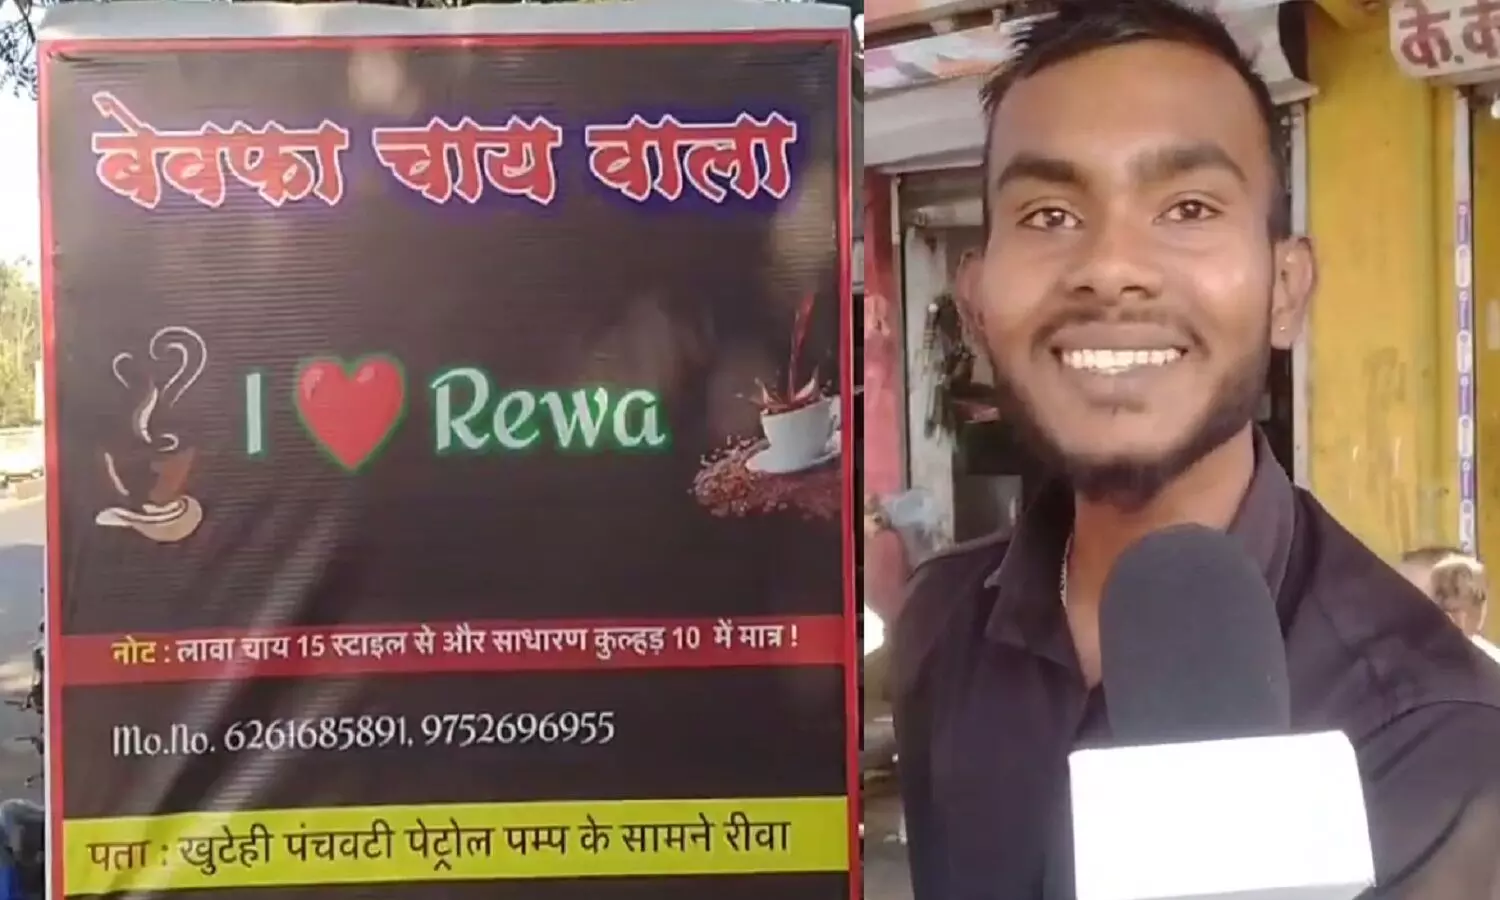 रीवा का बेवफा चाय वाला, जो लोगों को मोहब्बत की चाय पिलाता है, बड़ी दर्दभरी कहानी है